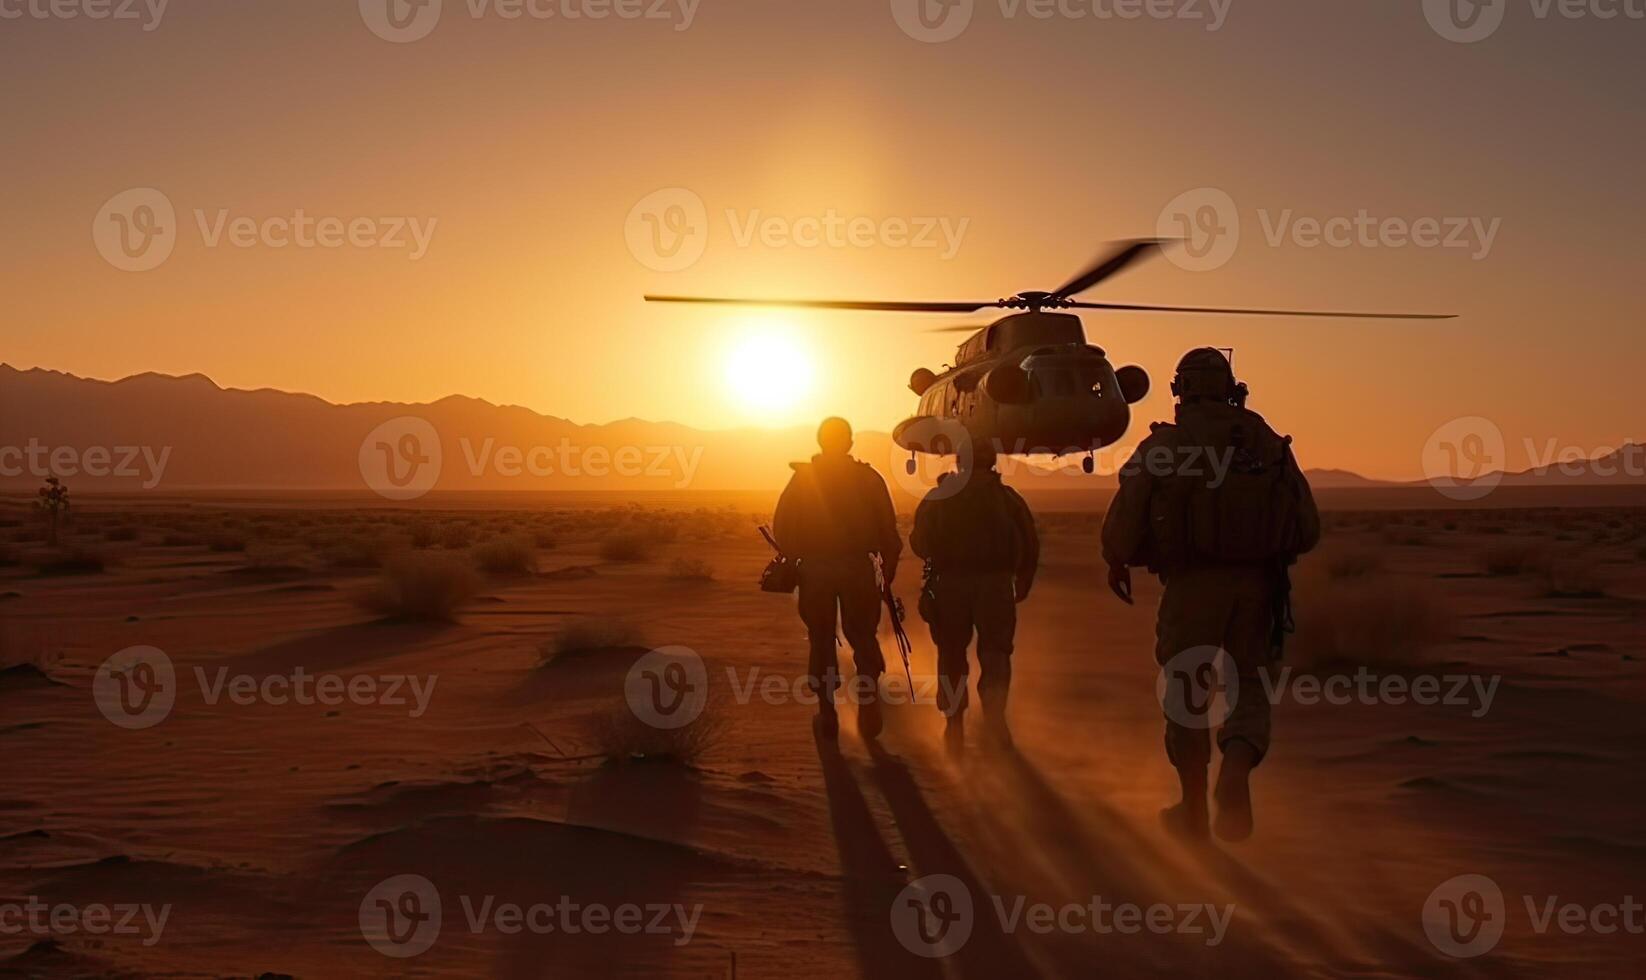 militar helicóptero con silueta soldados armado conflicto Entre Israel y Palestina, militar acción. un soldado en camuflaje ropa camina hacia un militar helicóptero. generativo ai. foto